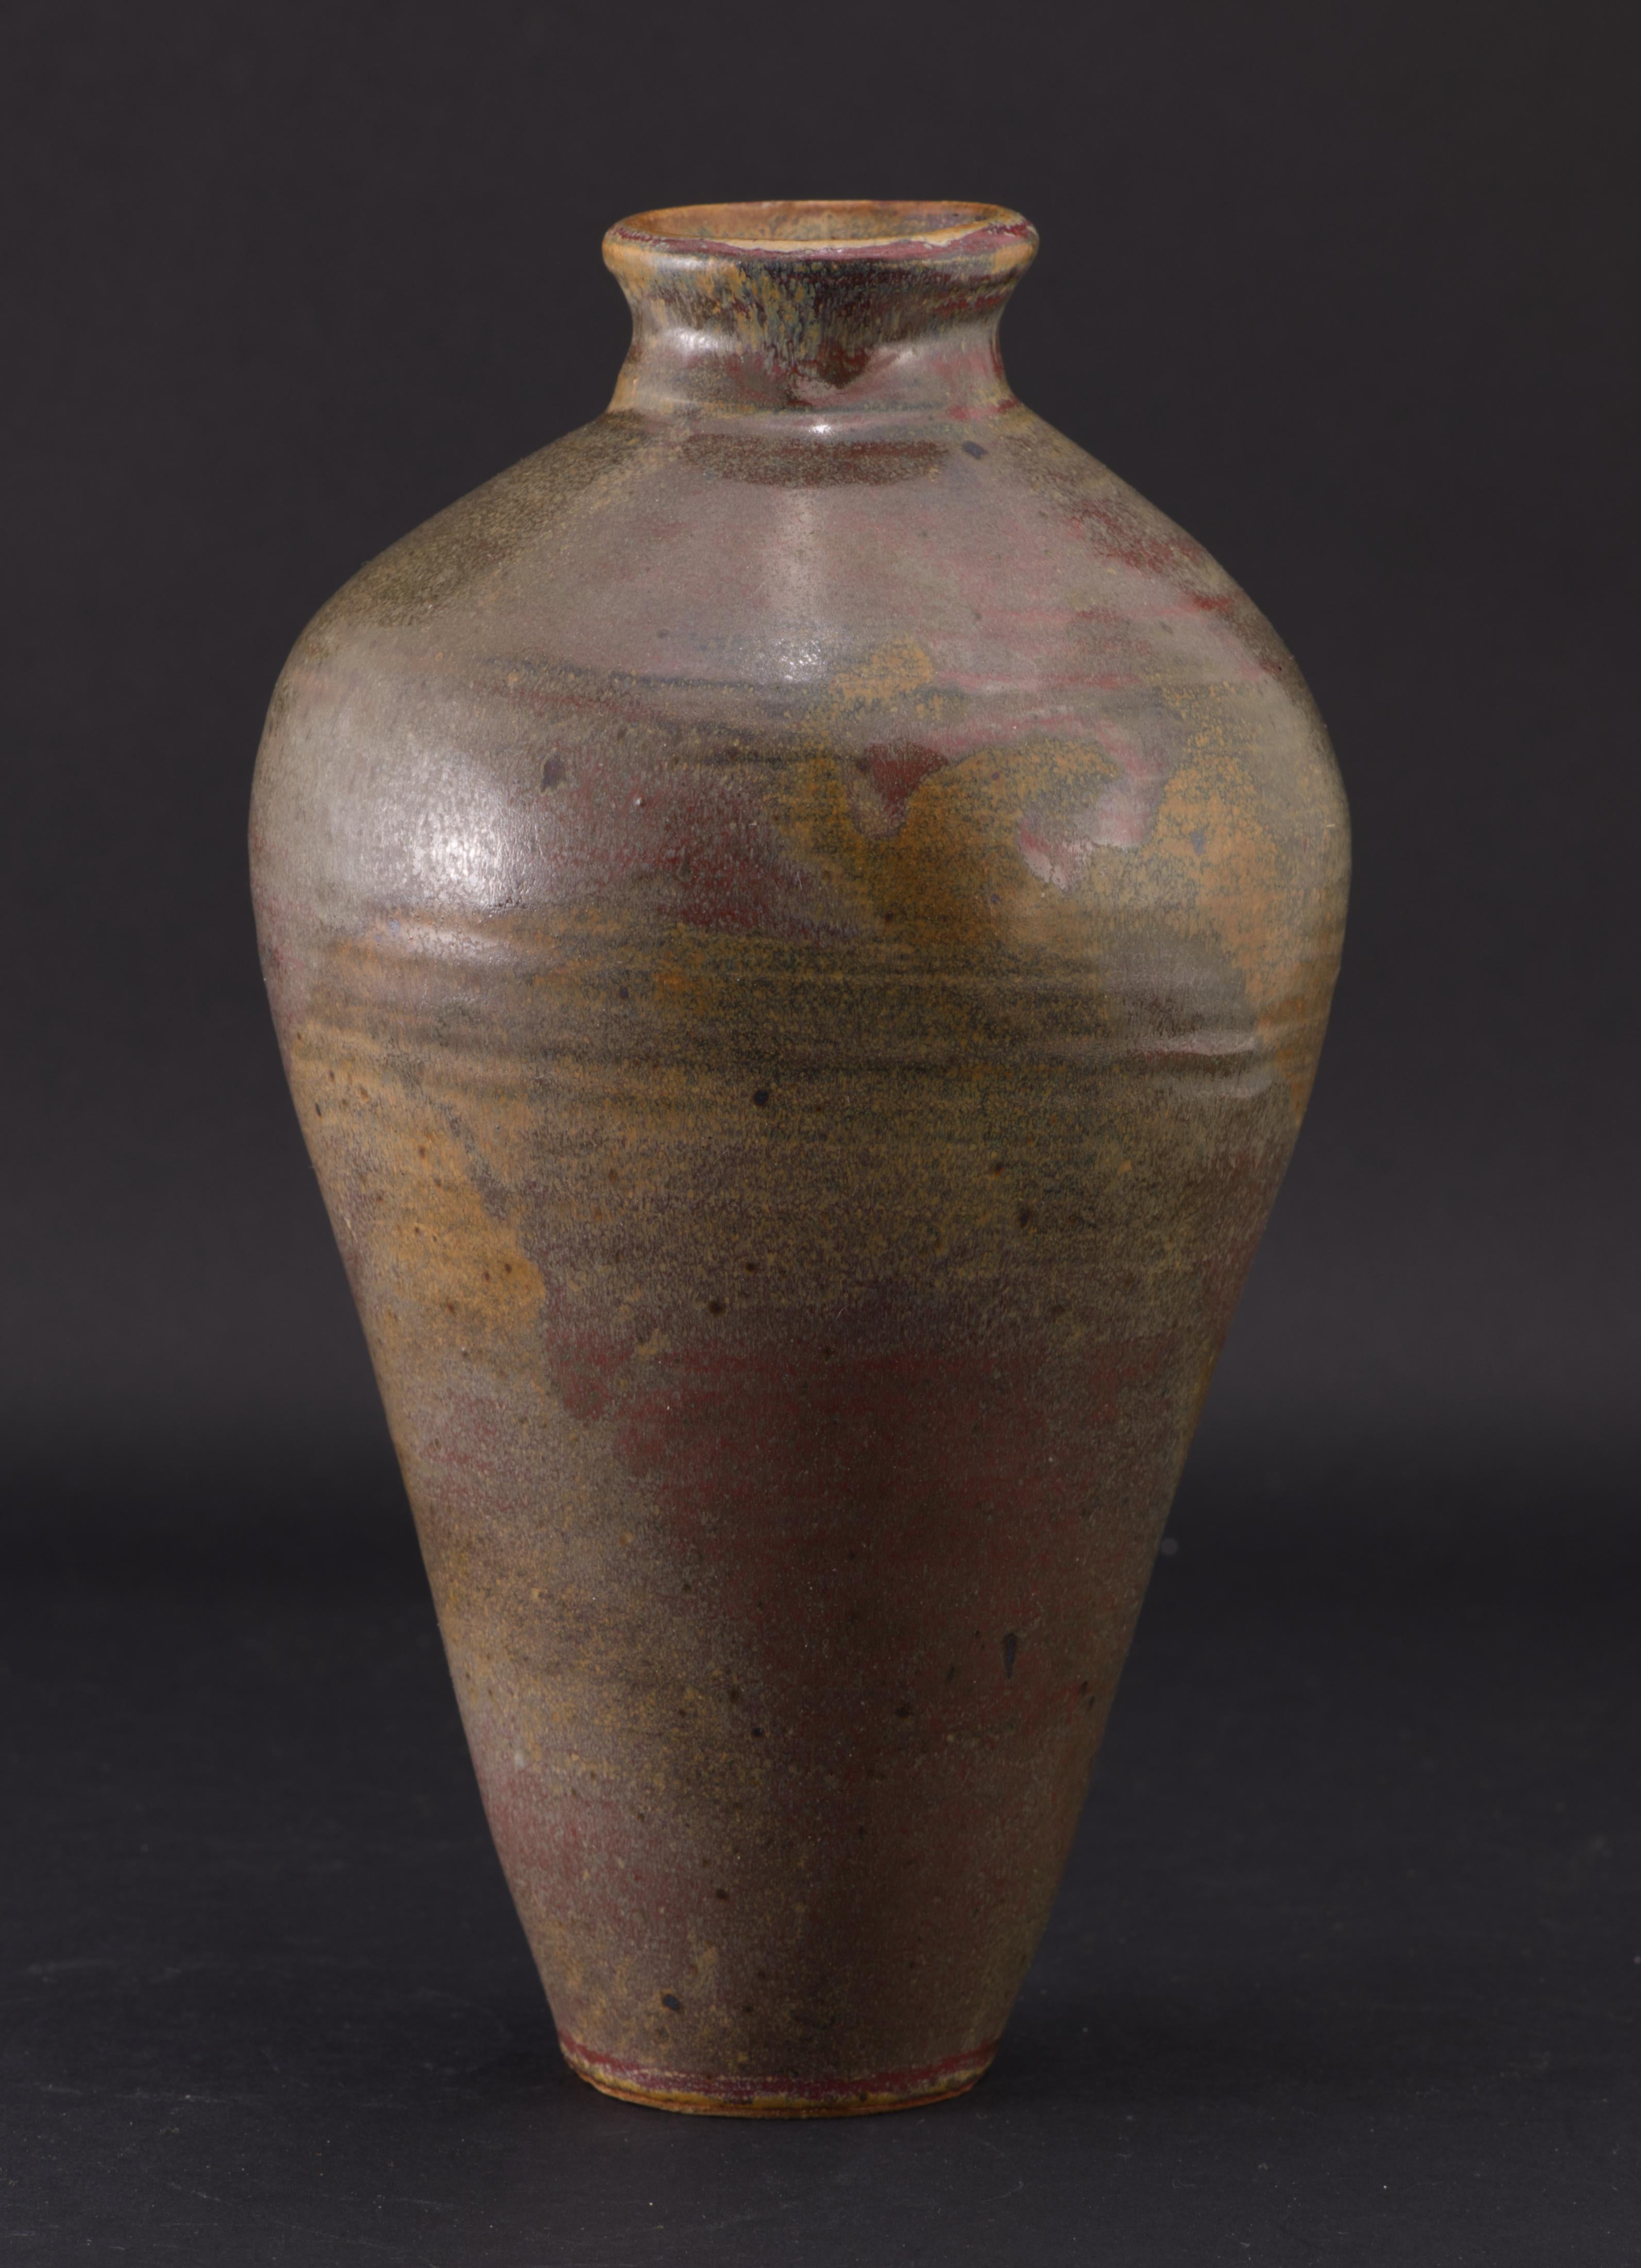  Schöne handgedrehte Vase in klassischer Amphora-Form mit schmalem Boden und Öffnung, die im Kontrast zum breiten Körper steht. Der Öffnungsrand und die Wölbung des oberen Teils des Körpers sind leicht asymmetrisch, was den Reiz der Handarbeit